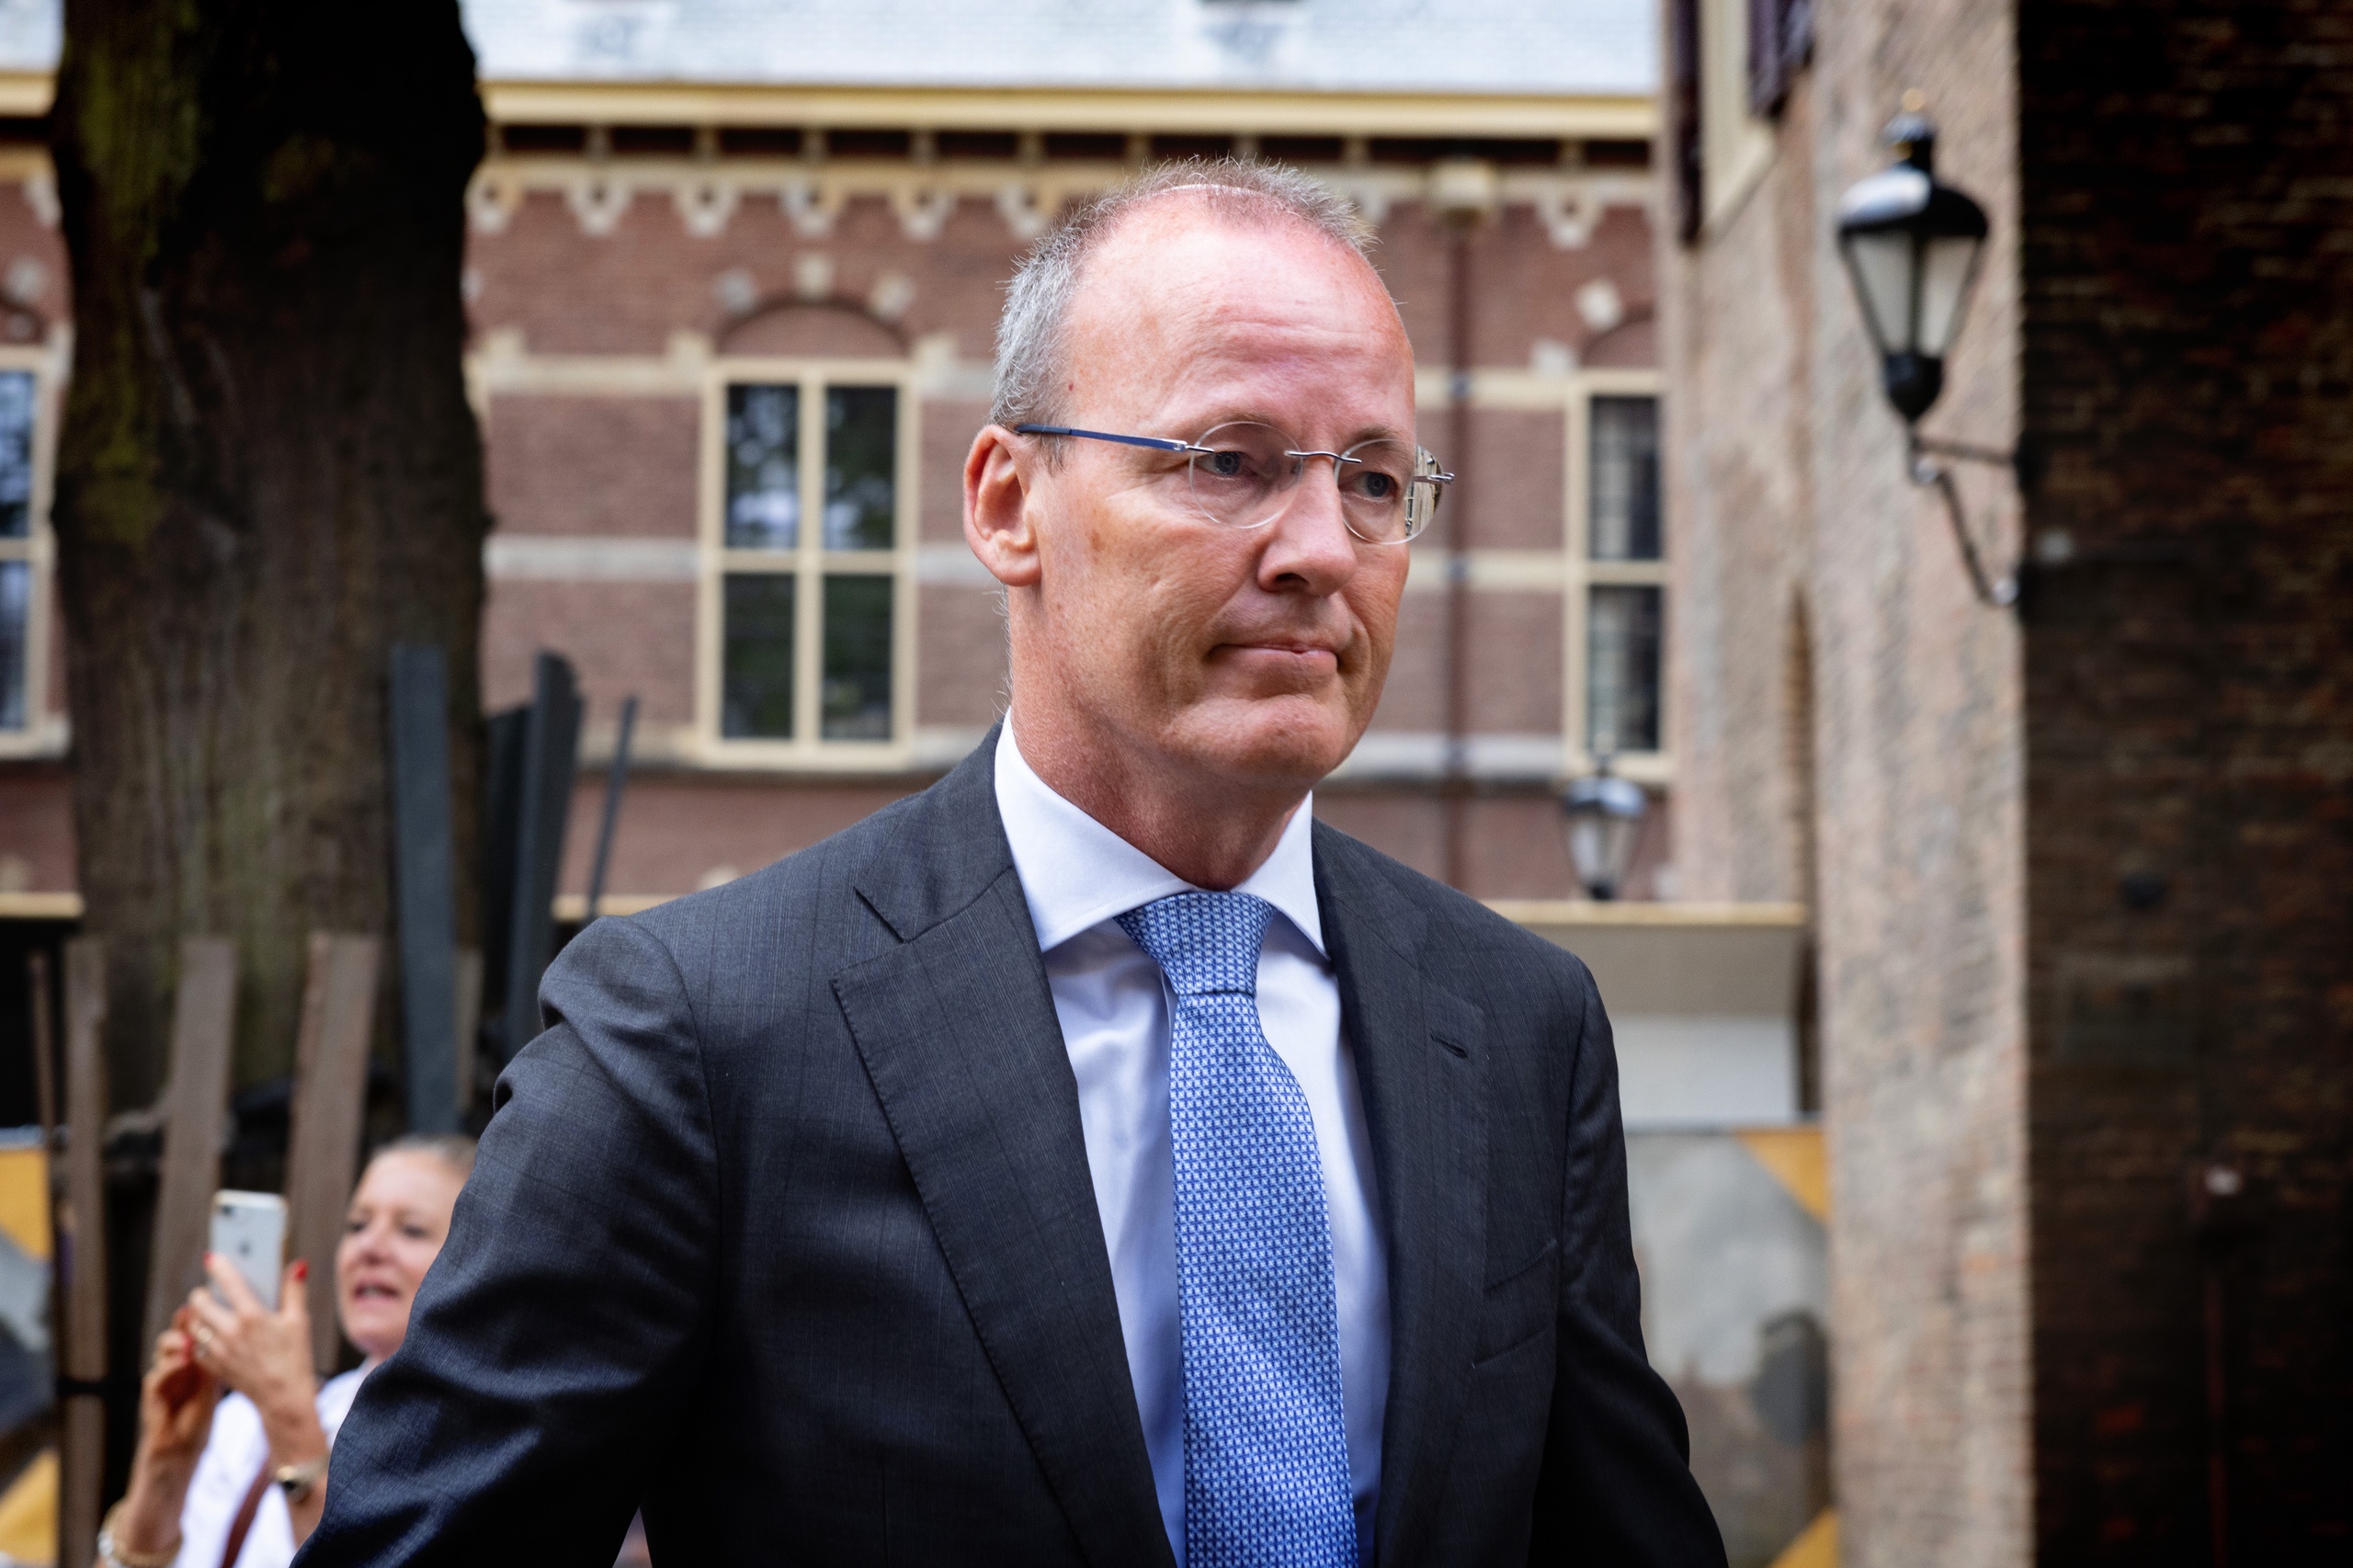 De eerste ministerraad na het zomerreces. Klaas Knot, president van de Nederlandse Bank, arriveert op het Binnenhof.